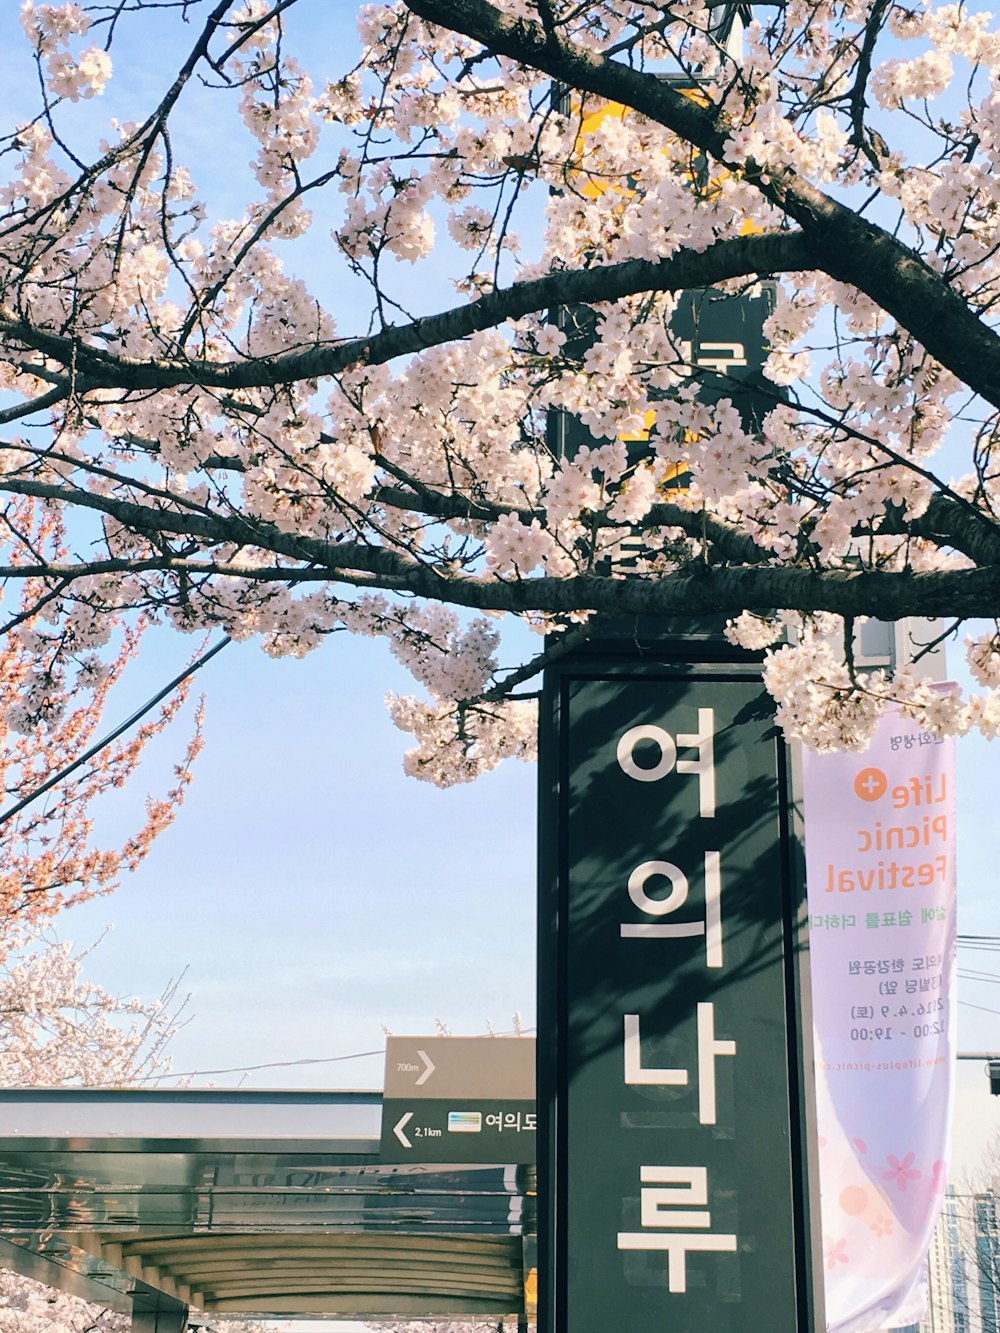 grünes Schuppenschild mit Hangul-Text tagsüber neben Baum mit hellrosa Blüten tagsüber